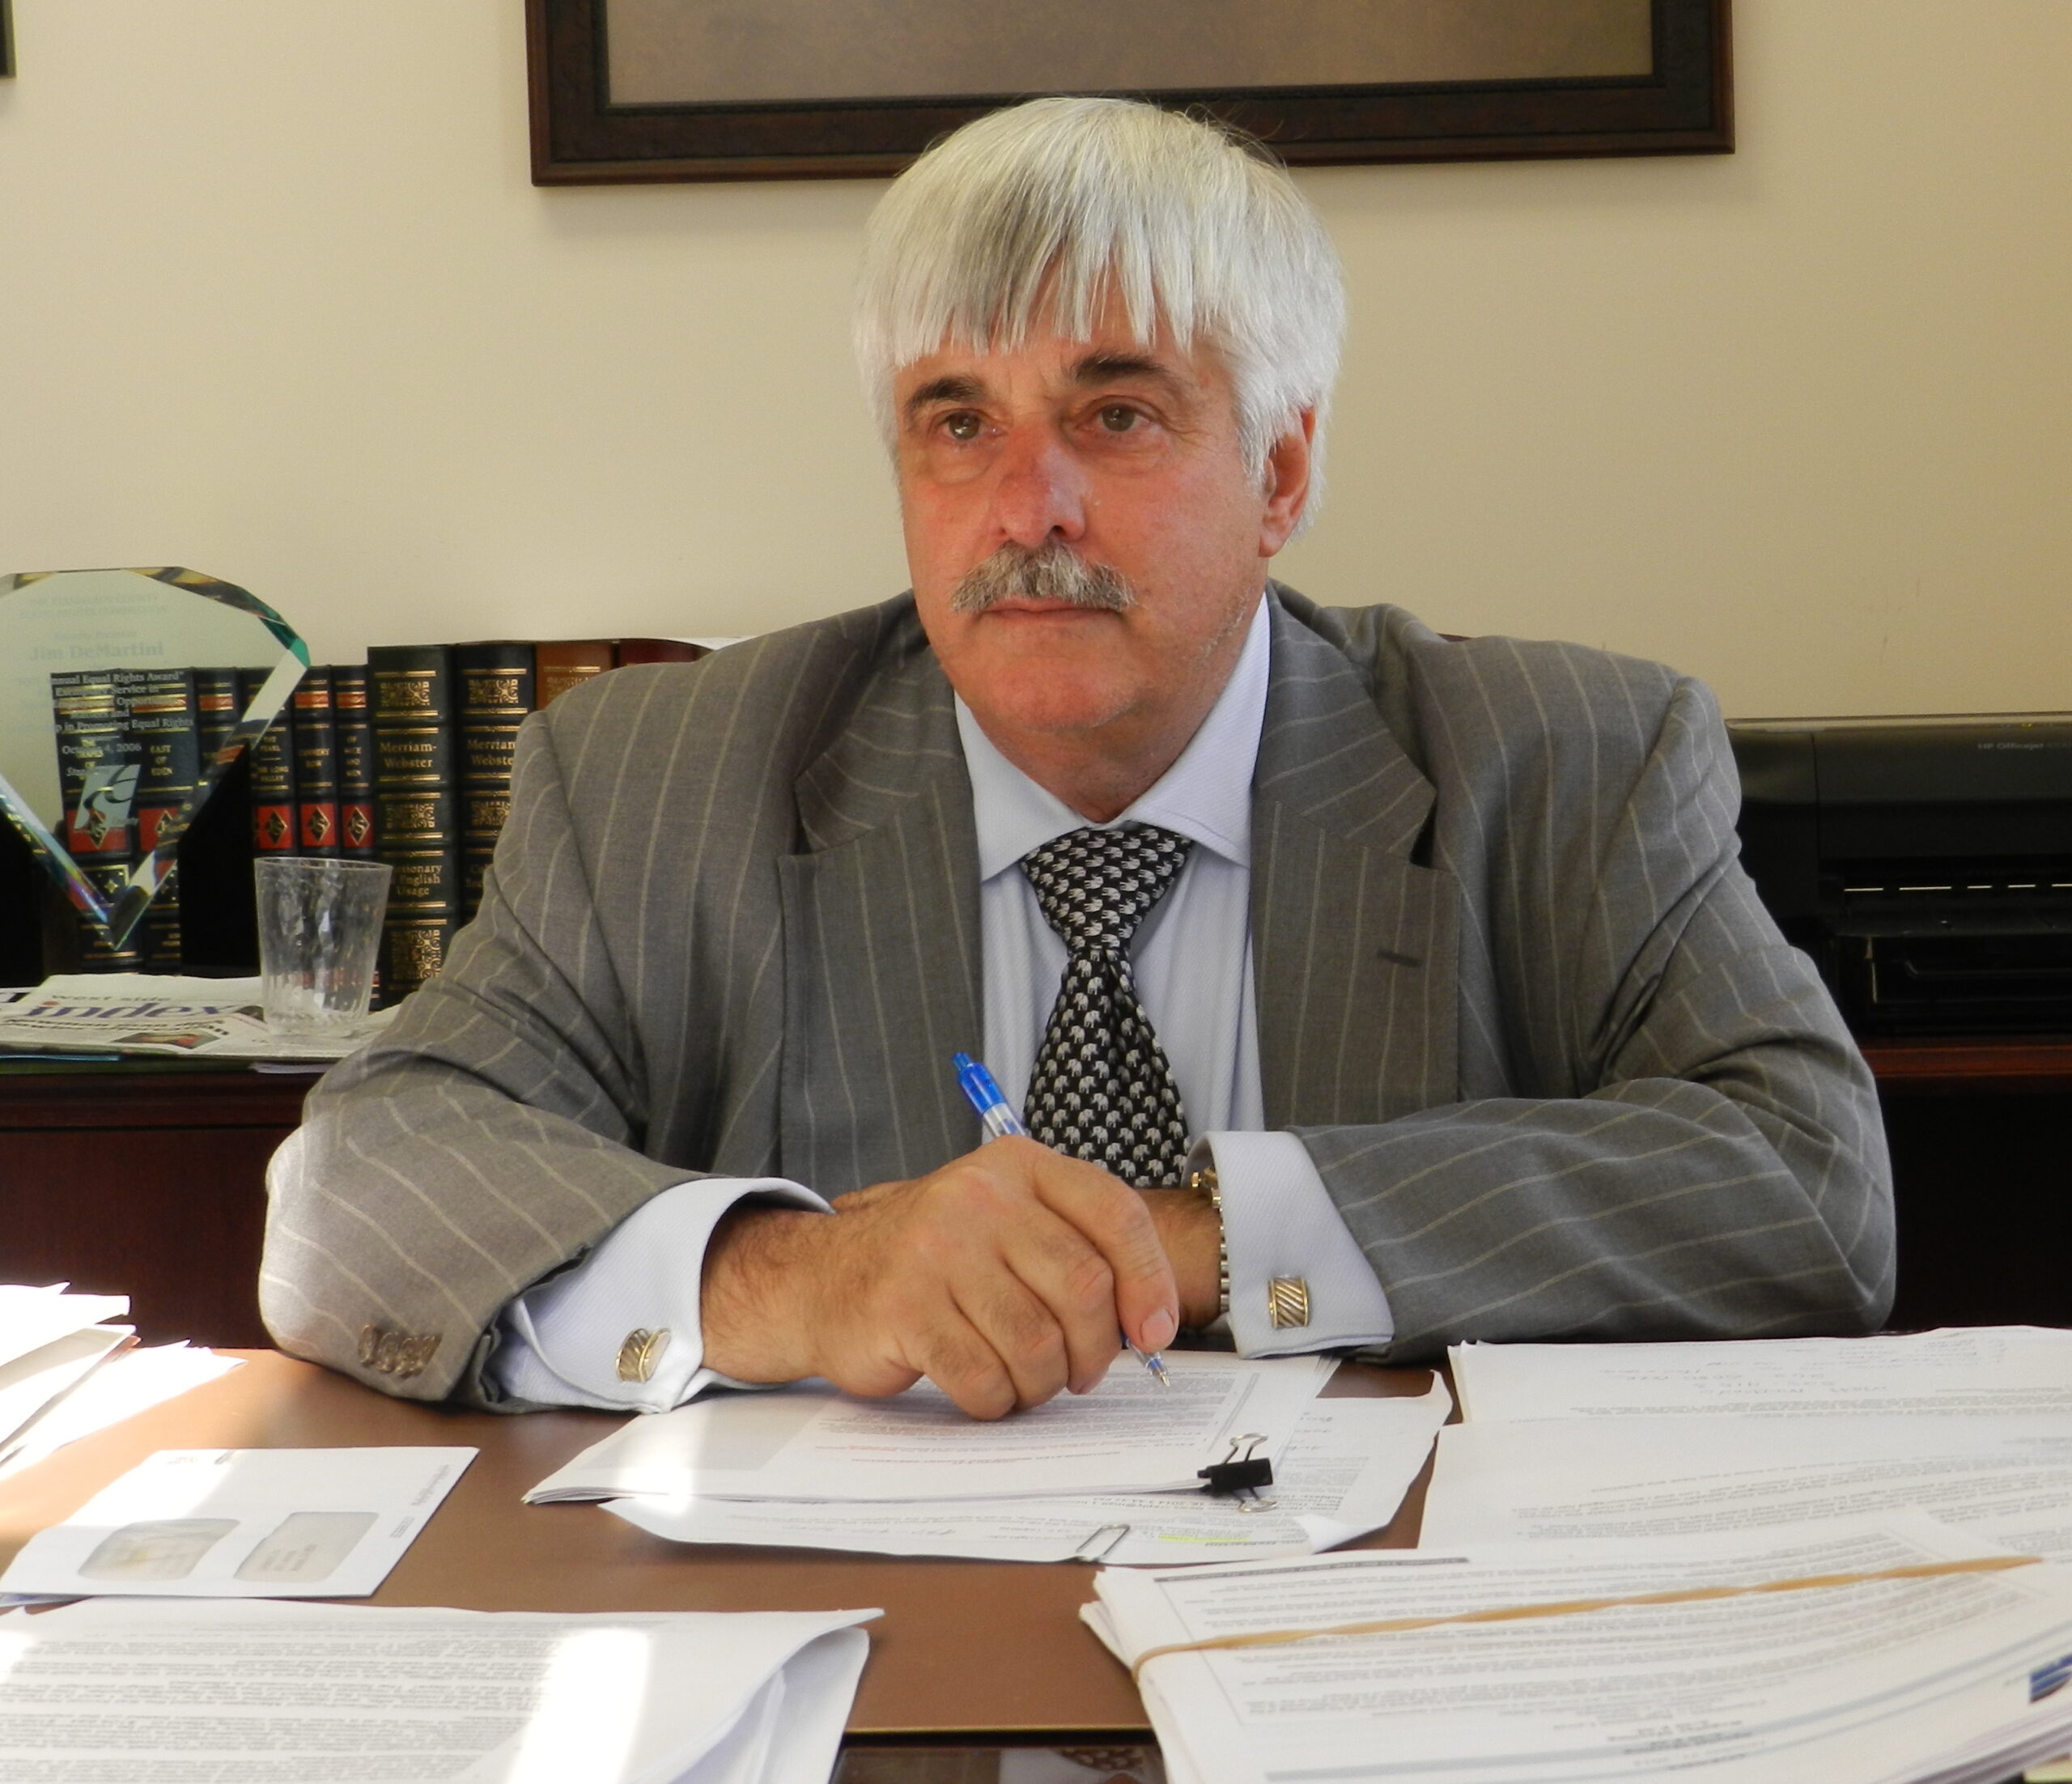 Stanislaus County Supervisor Jim DeMartini